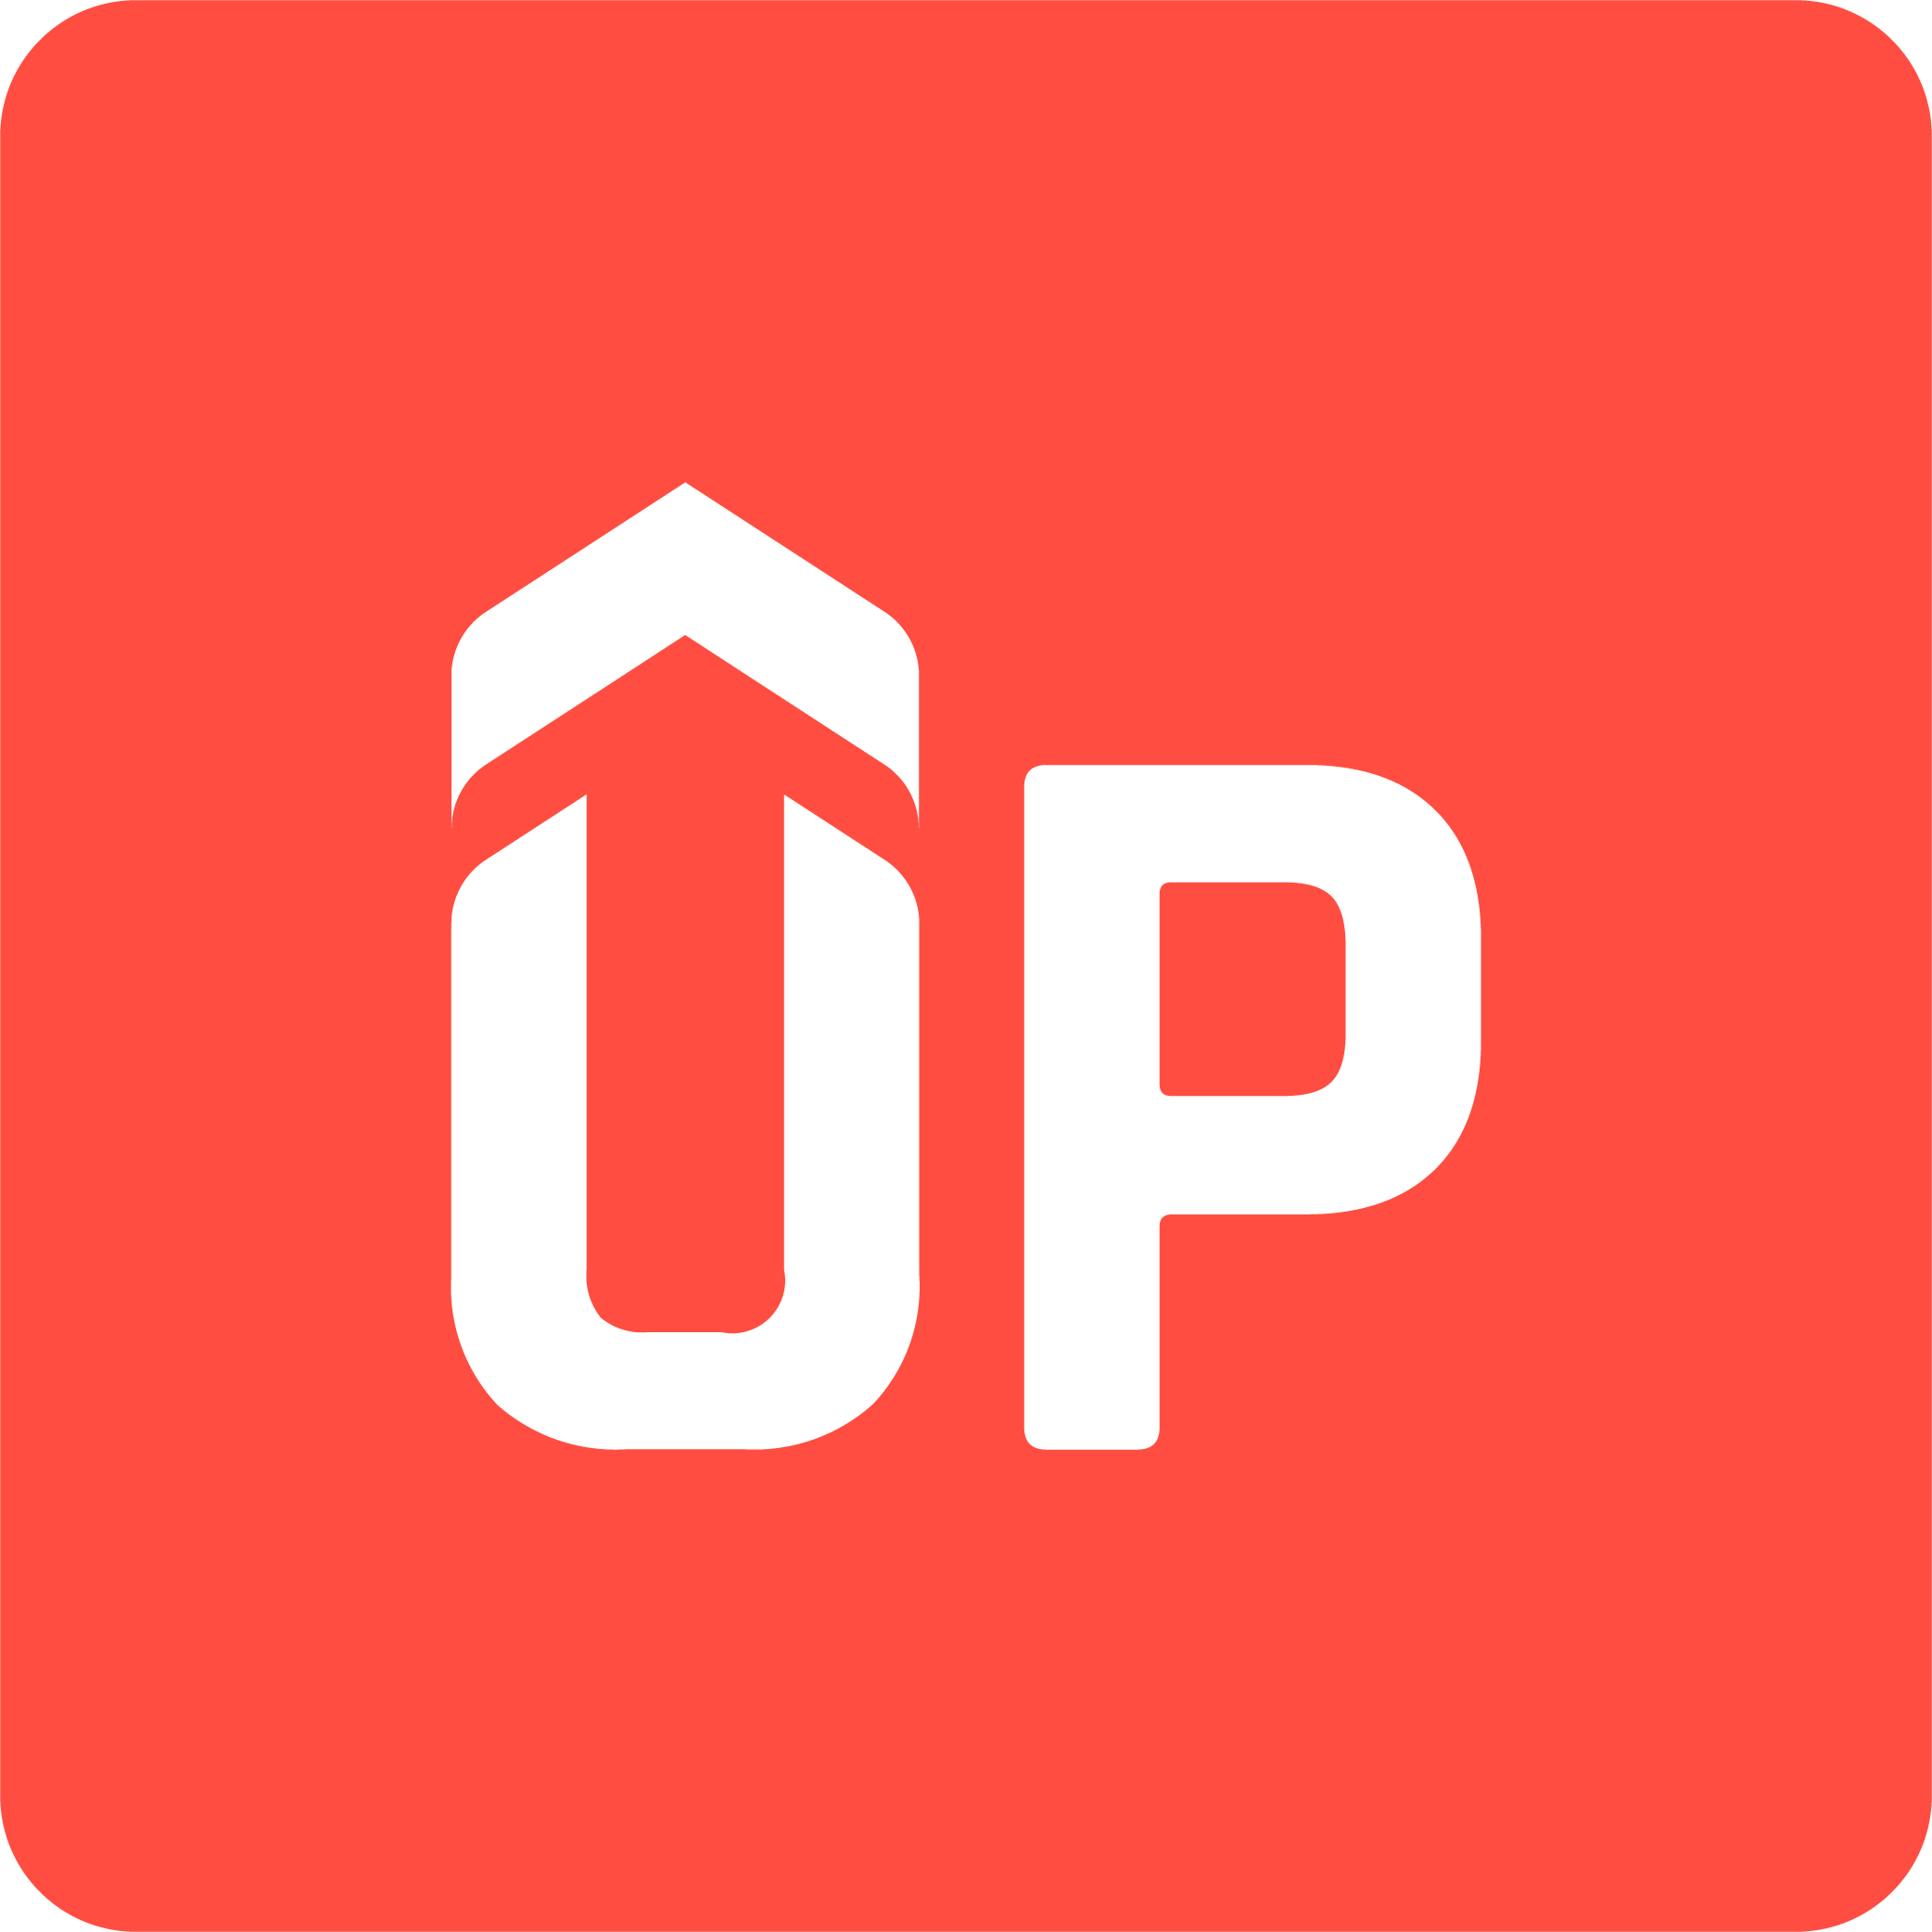 Shopify Increase Conversion & Sales app by Secomapp